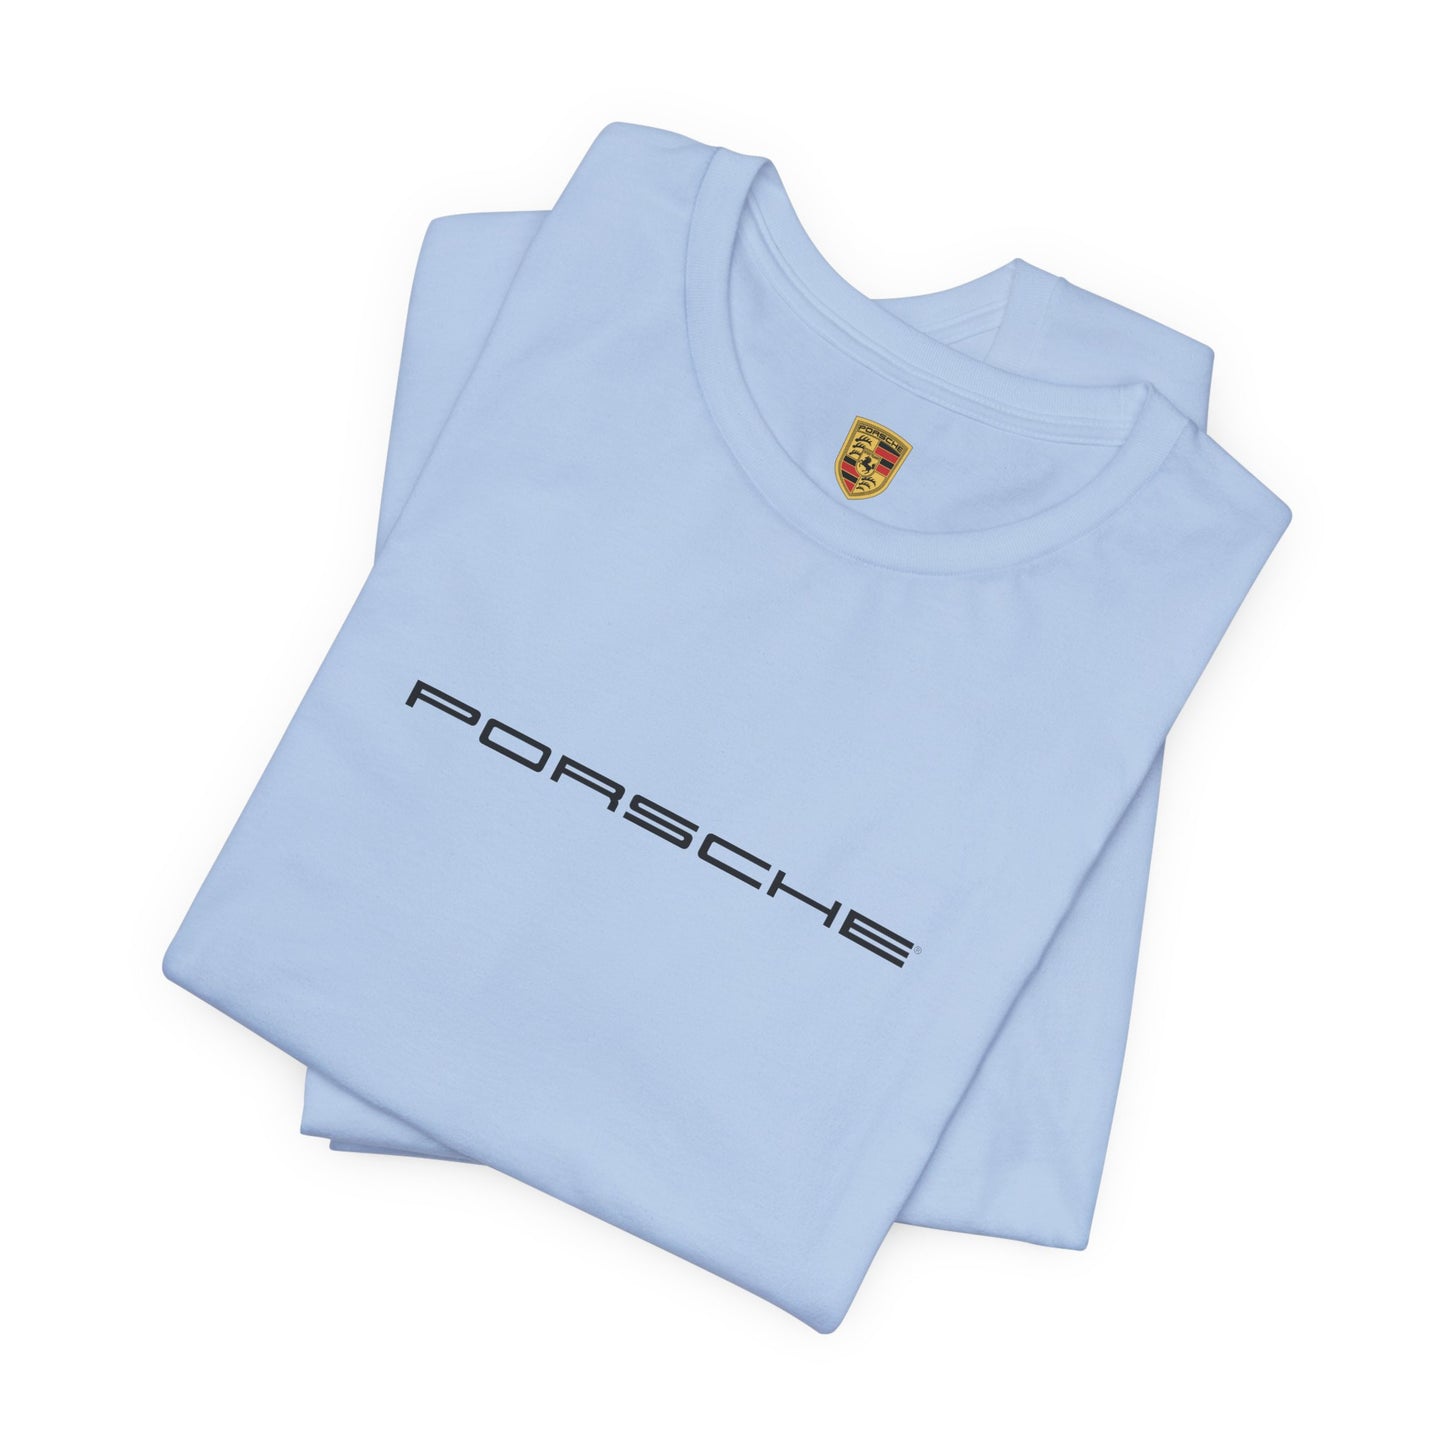 Porsche inspiriertes Logo Bella+Canvas Kurzarm-T-Shirt – 16 Farben – ethisches Unisex-Baumwoll-T-Shirt – hergestellt in den USA